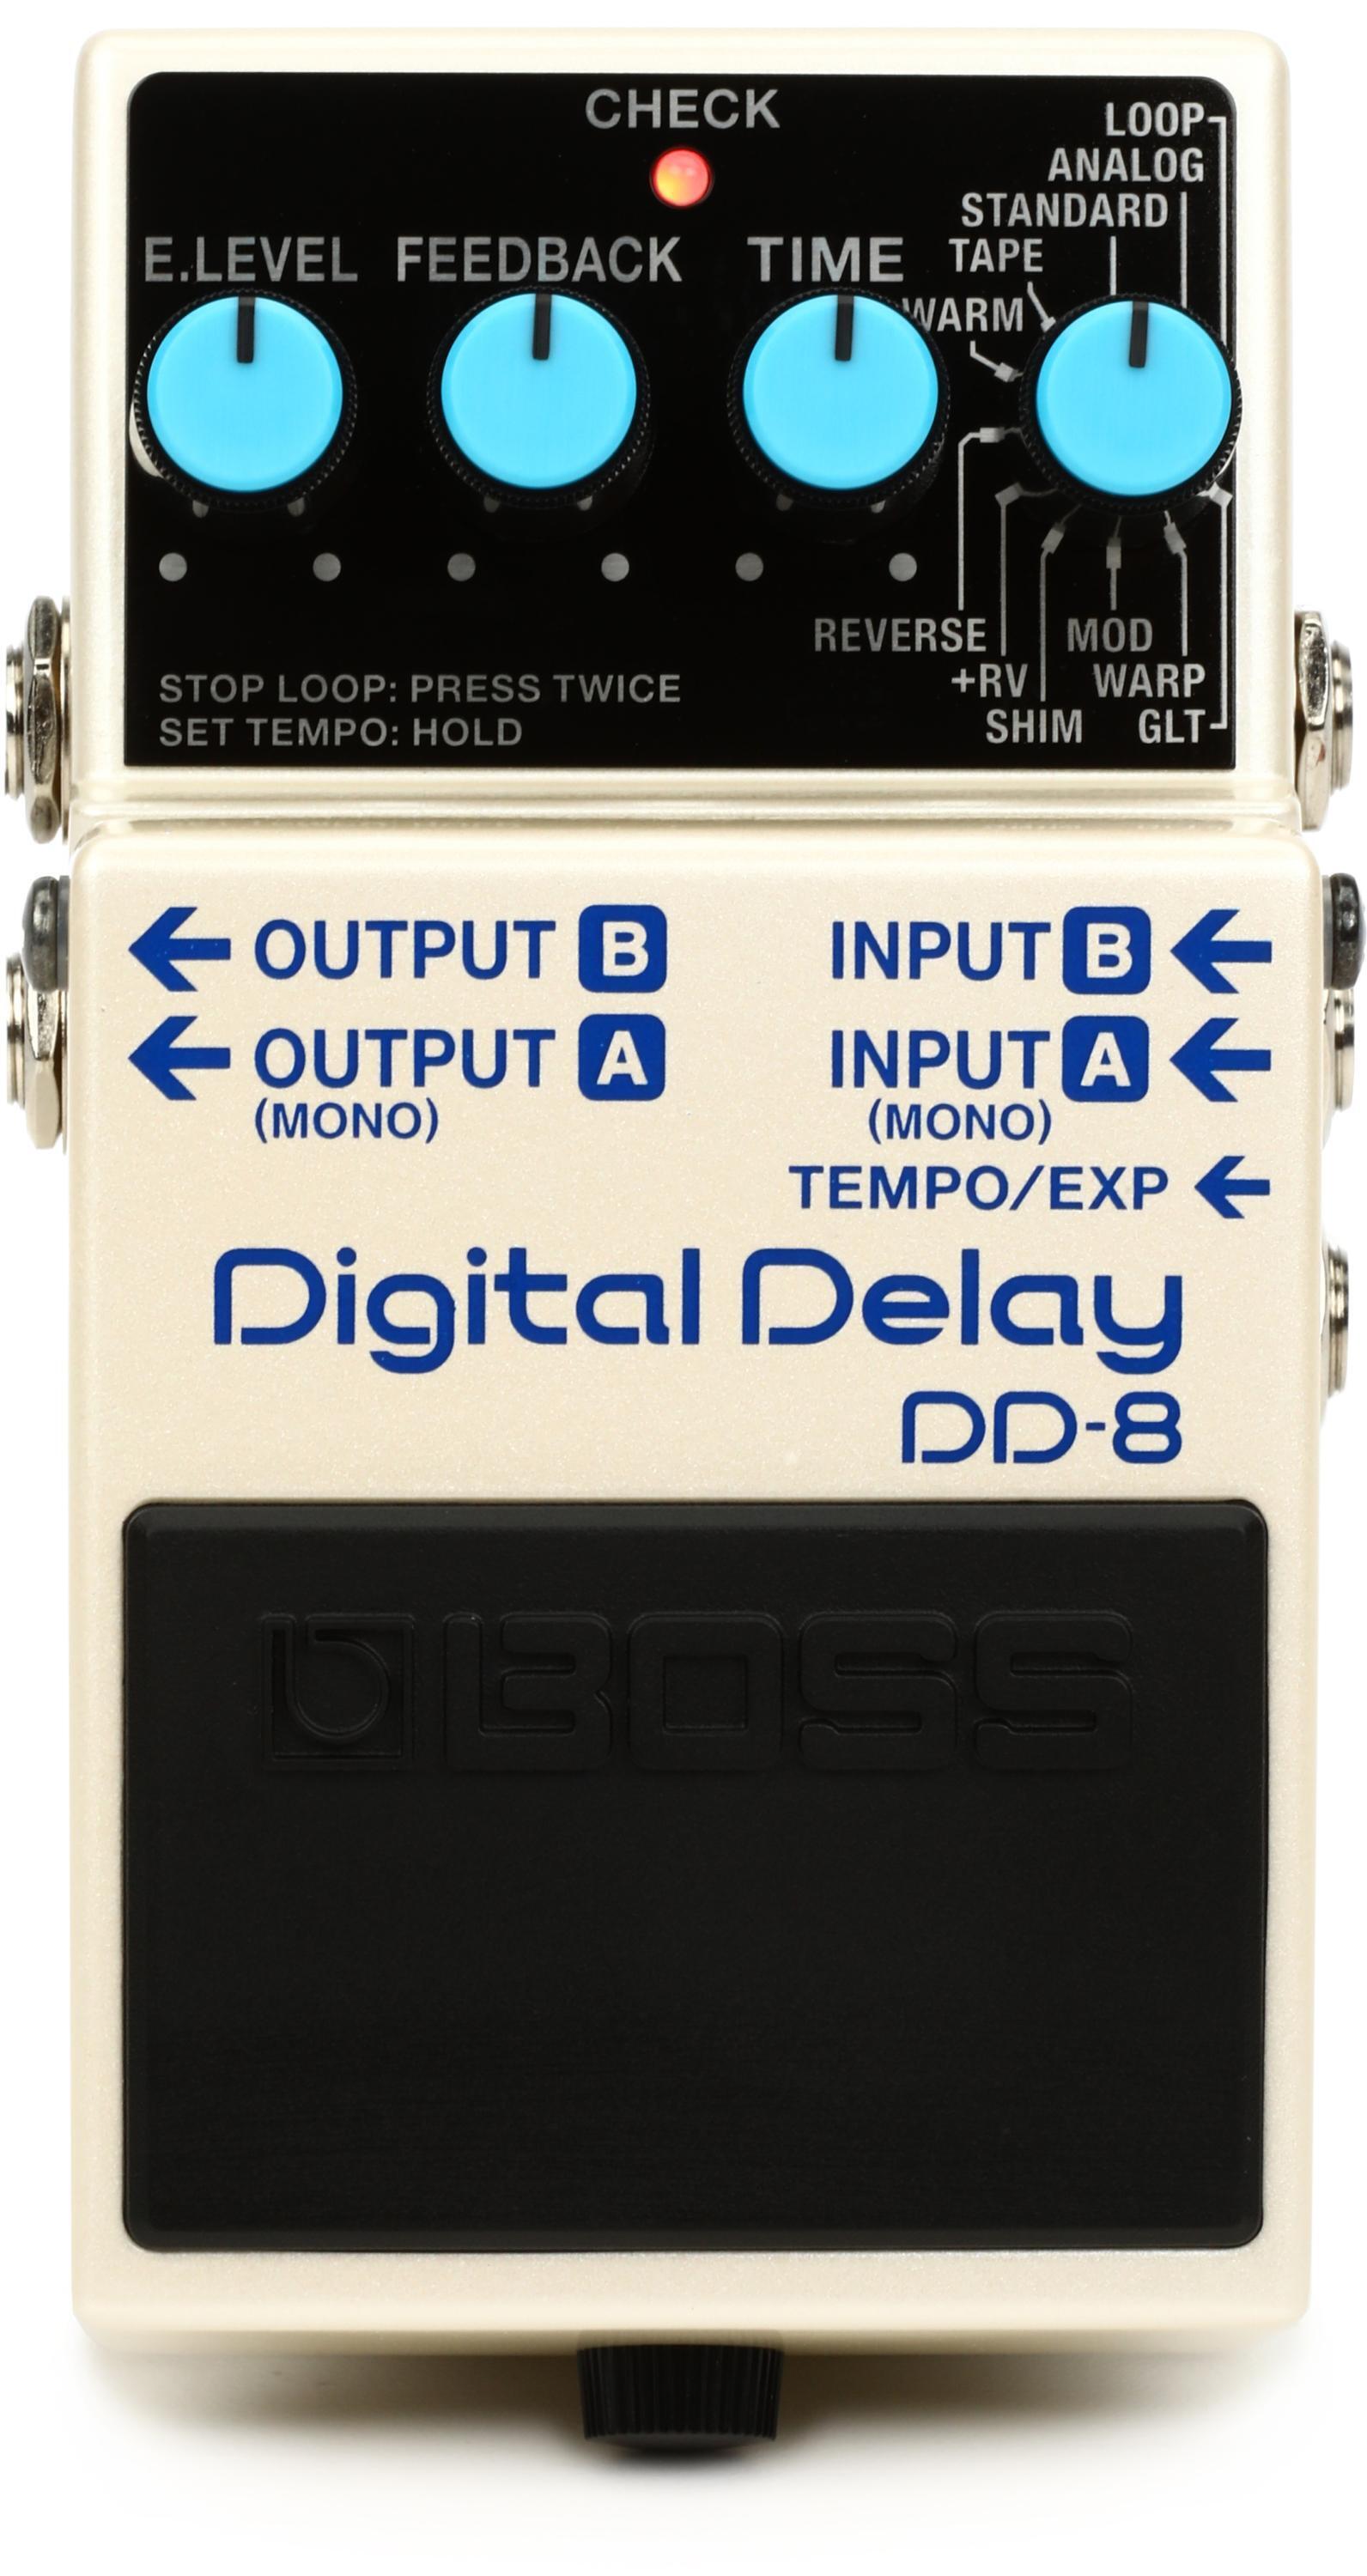 DD-7 digital delay